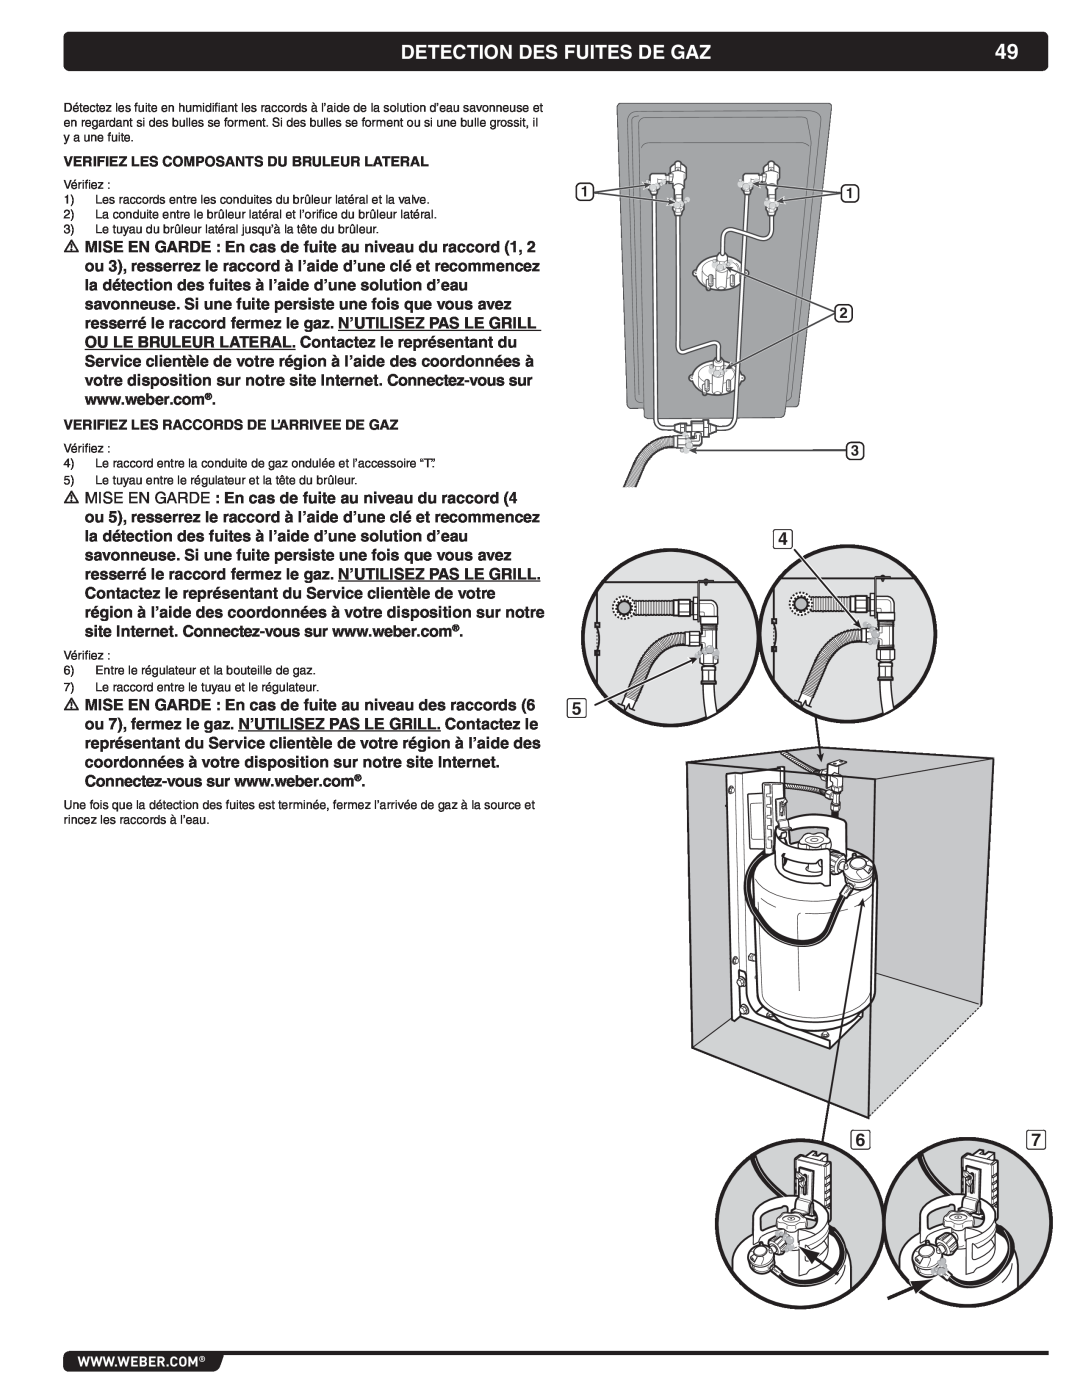 Weber 56069 manual Detection Des Fuites De Gaz, Verifiez Les Composants Du Bruleur Lateral 